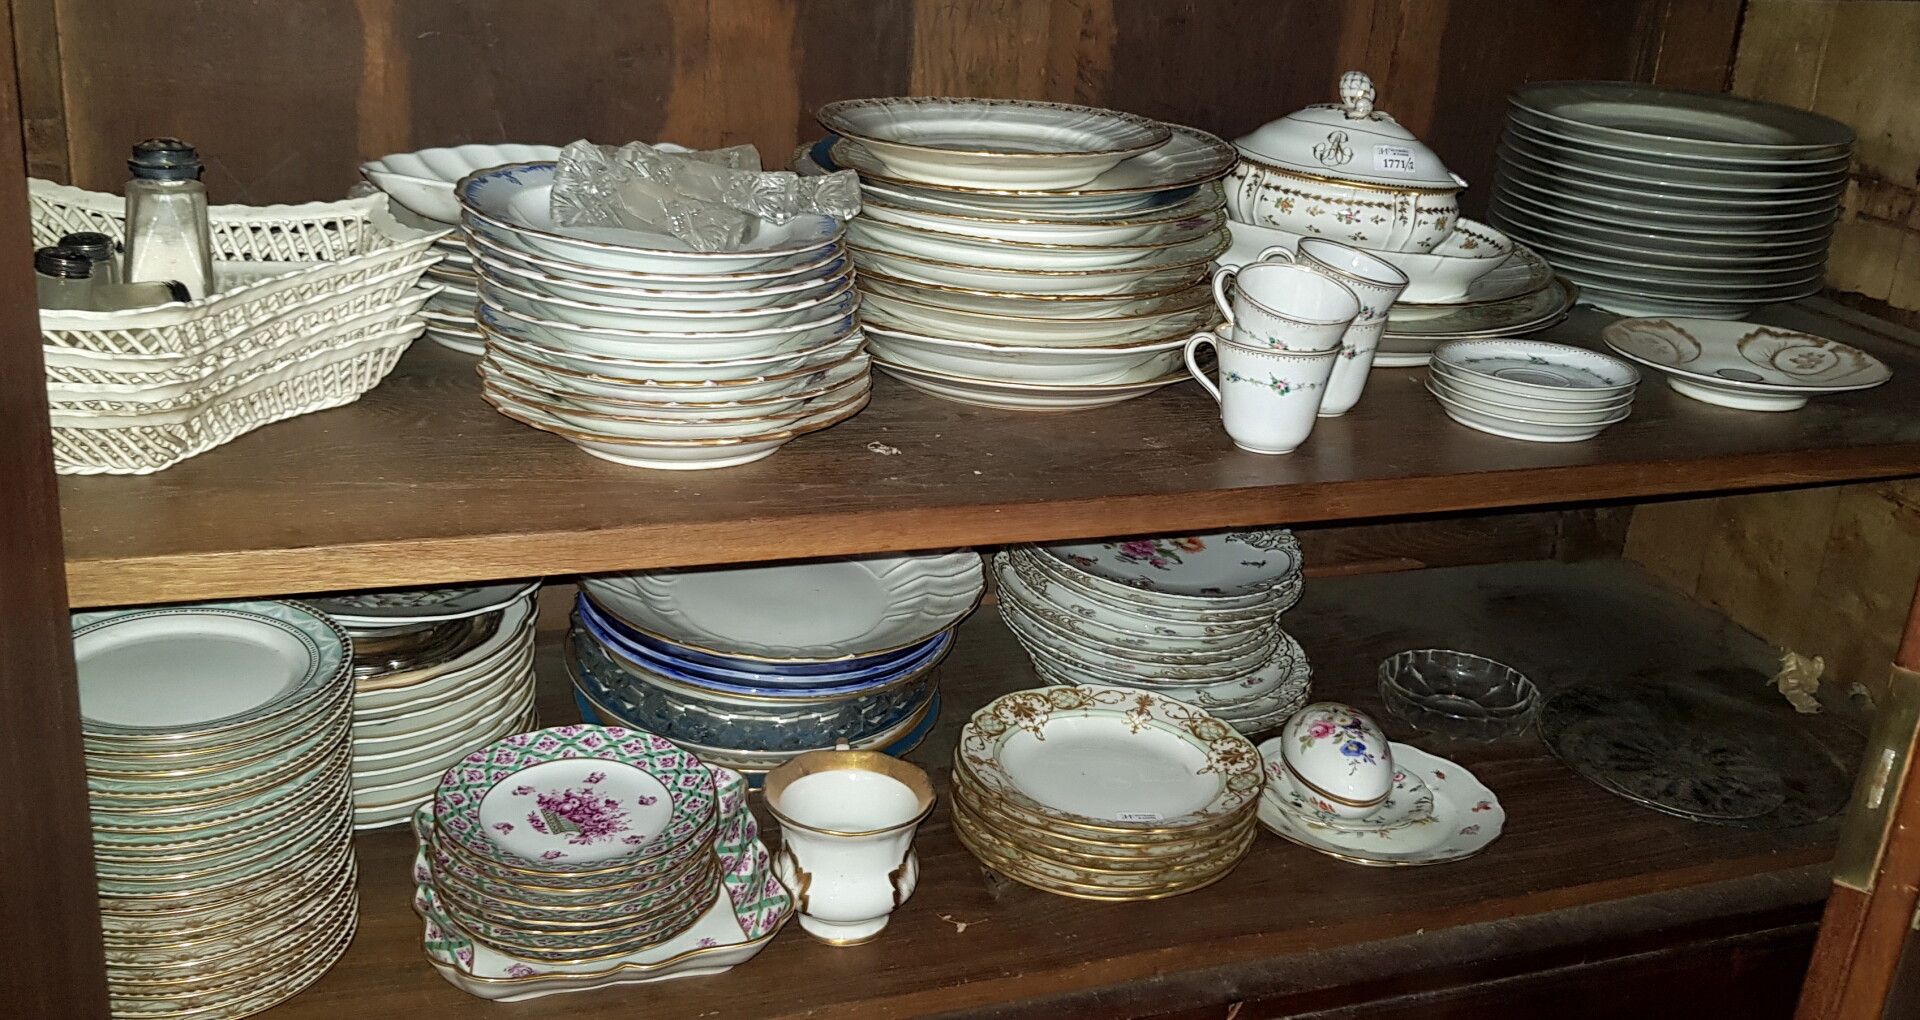 Null 漂亮的陶瓷套装包括:

各种型号的盘子、碟子、篮子、酱缸......都有一个手柄